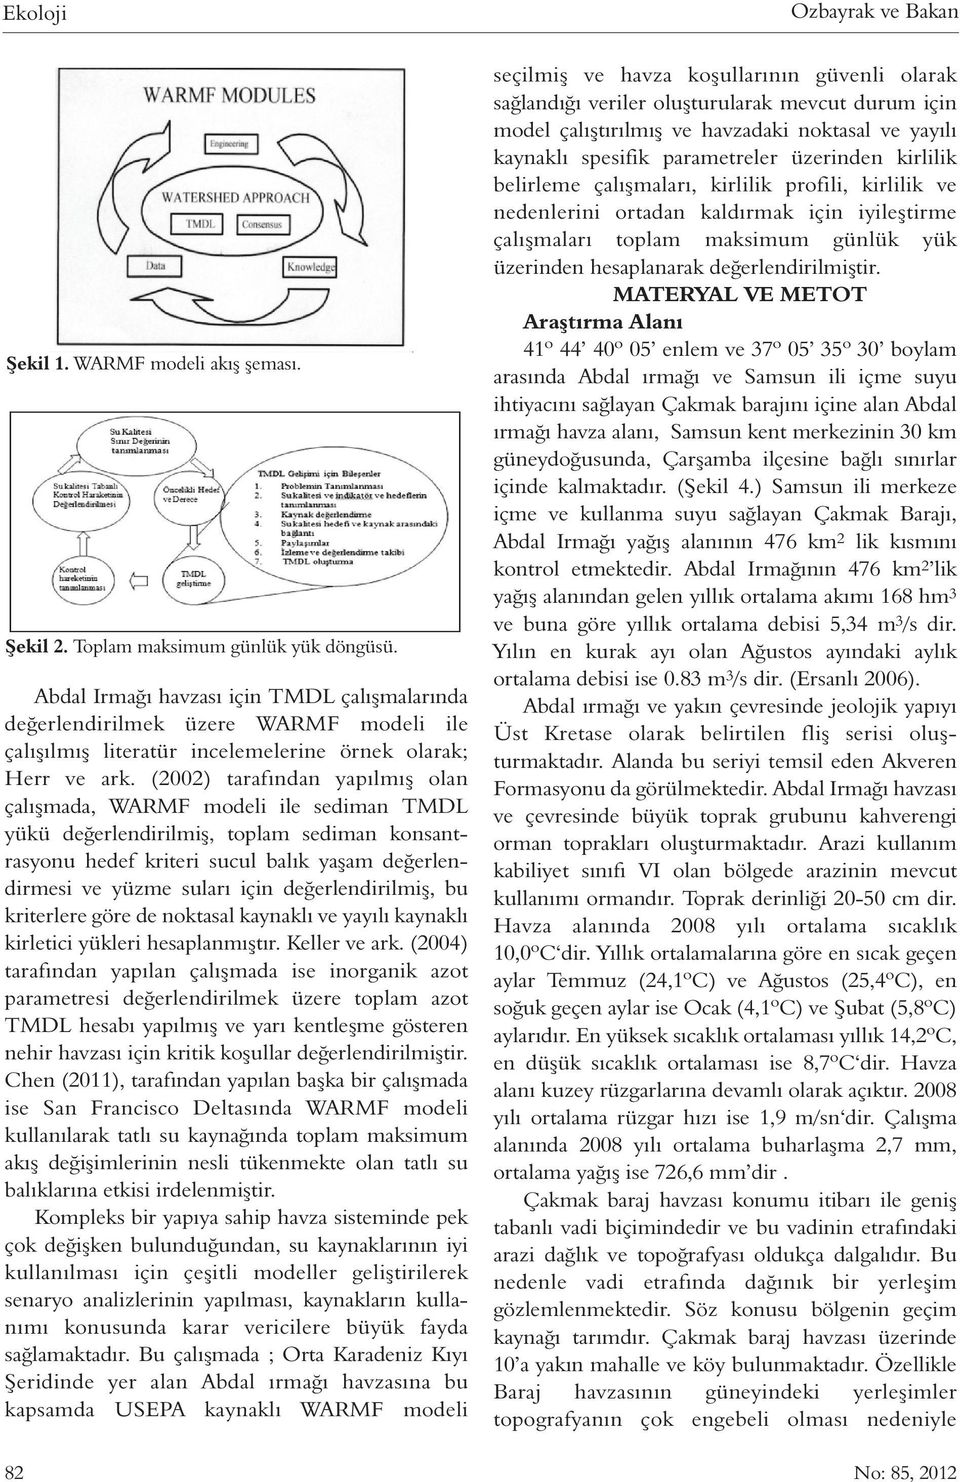 (2002) tarafından yapılmış olan çalışmada, WARMF modeli ile sediman TMDL yükü değerlendirilmiş, toplam sediman konsantrasyonu hedef kriteri sucul balık yaşam değerlendirmesi ve yüzme suları için